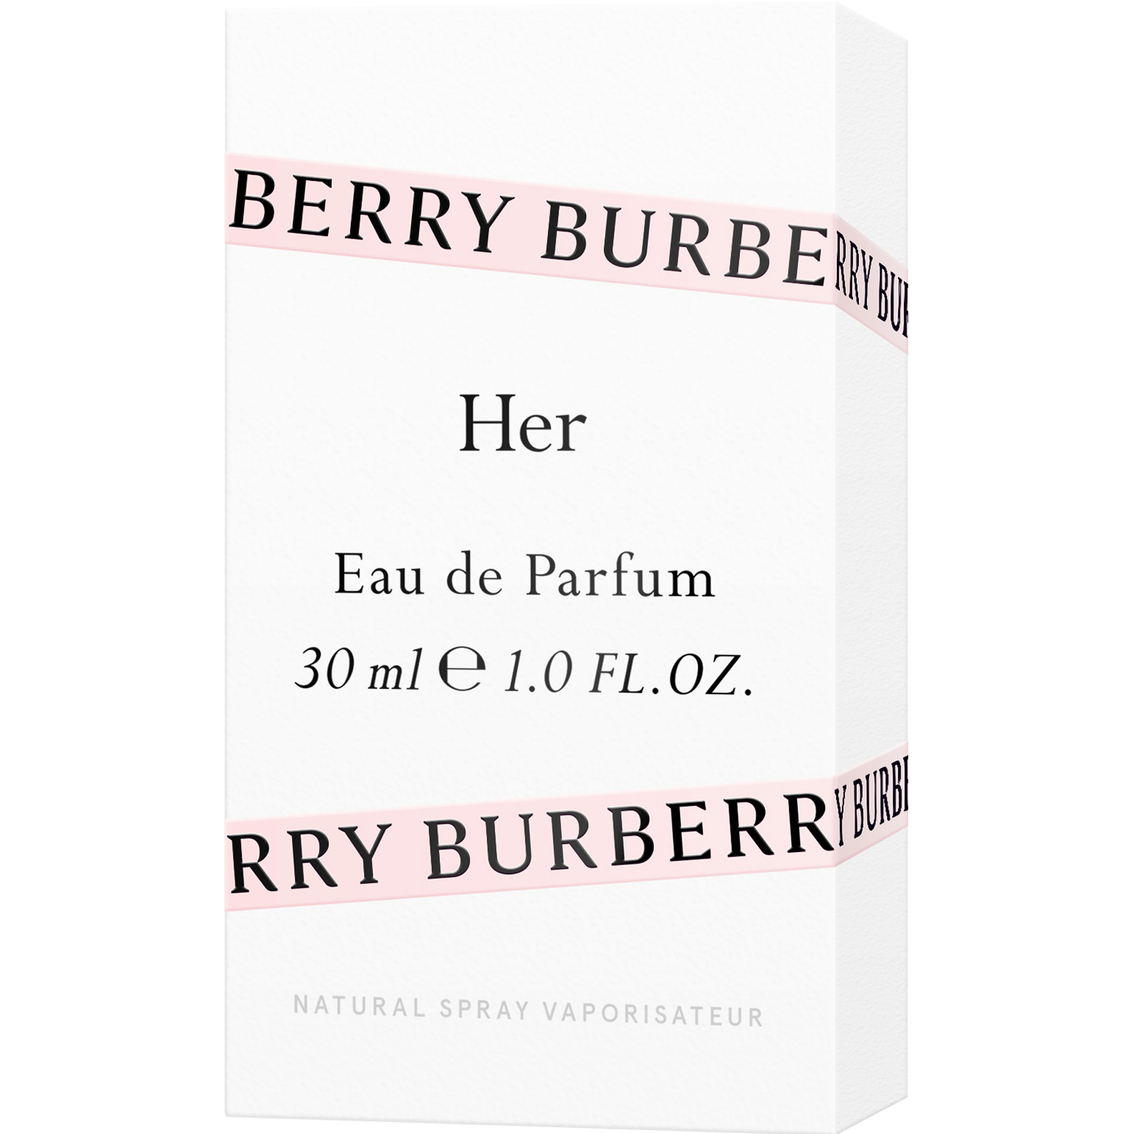 Burberry Her Eau de Parfum Spray - Image 3 of 3